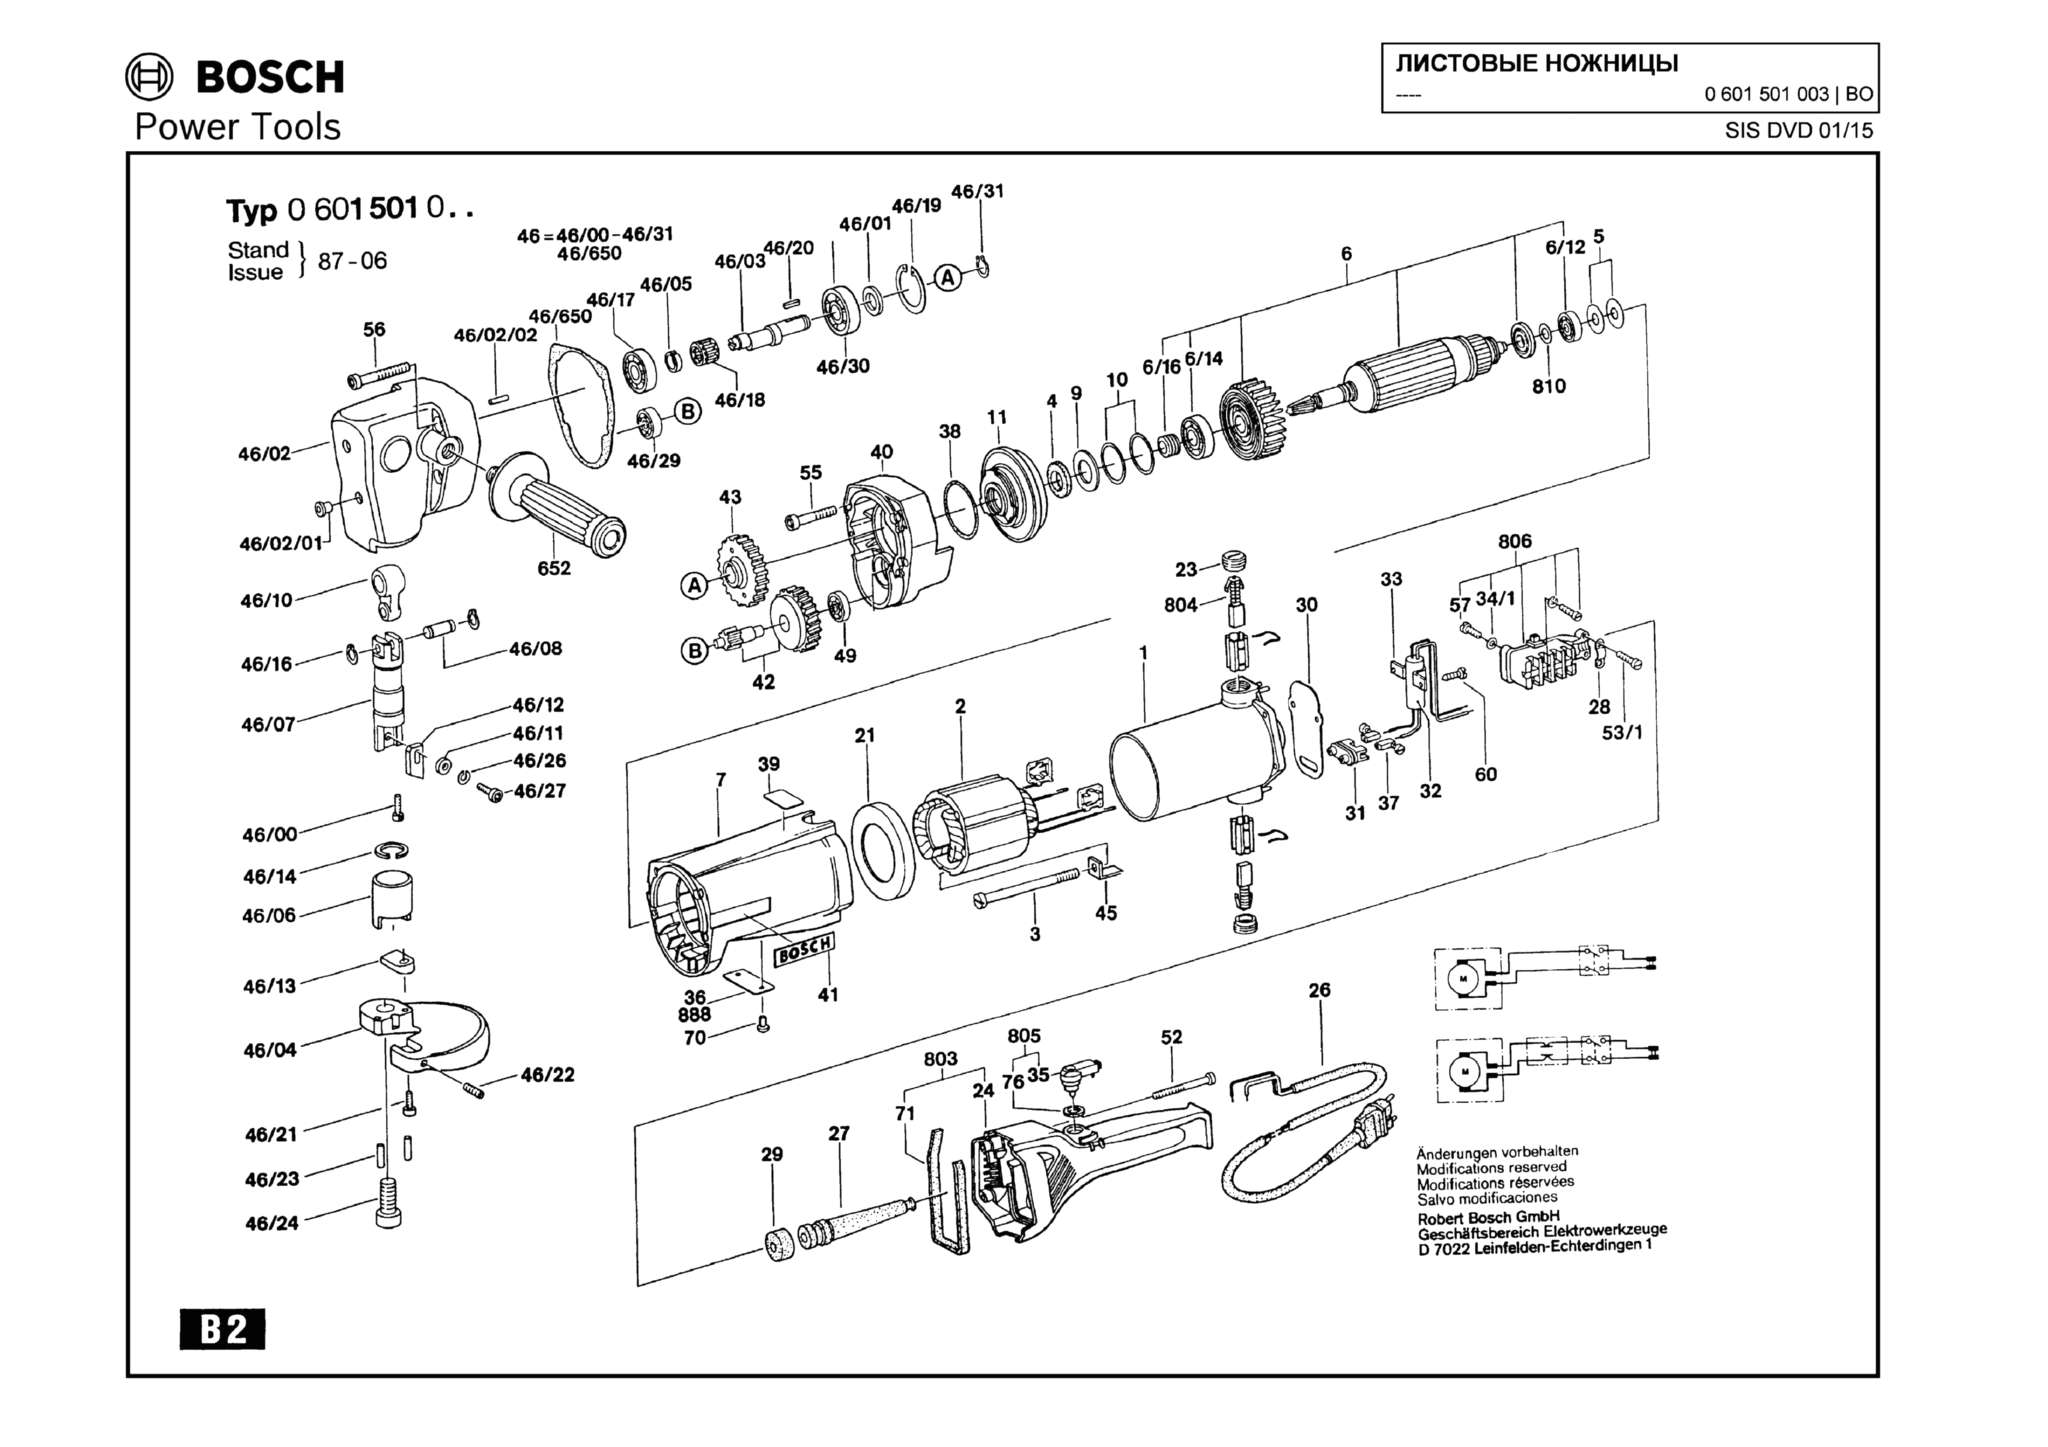 Запчасти, схема и деталировка Bosch (ТИП 0601501003)